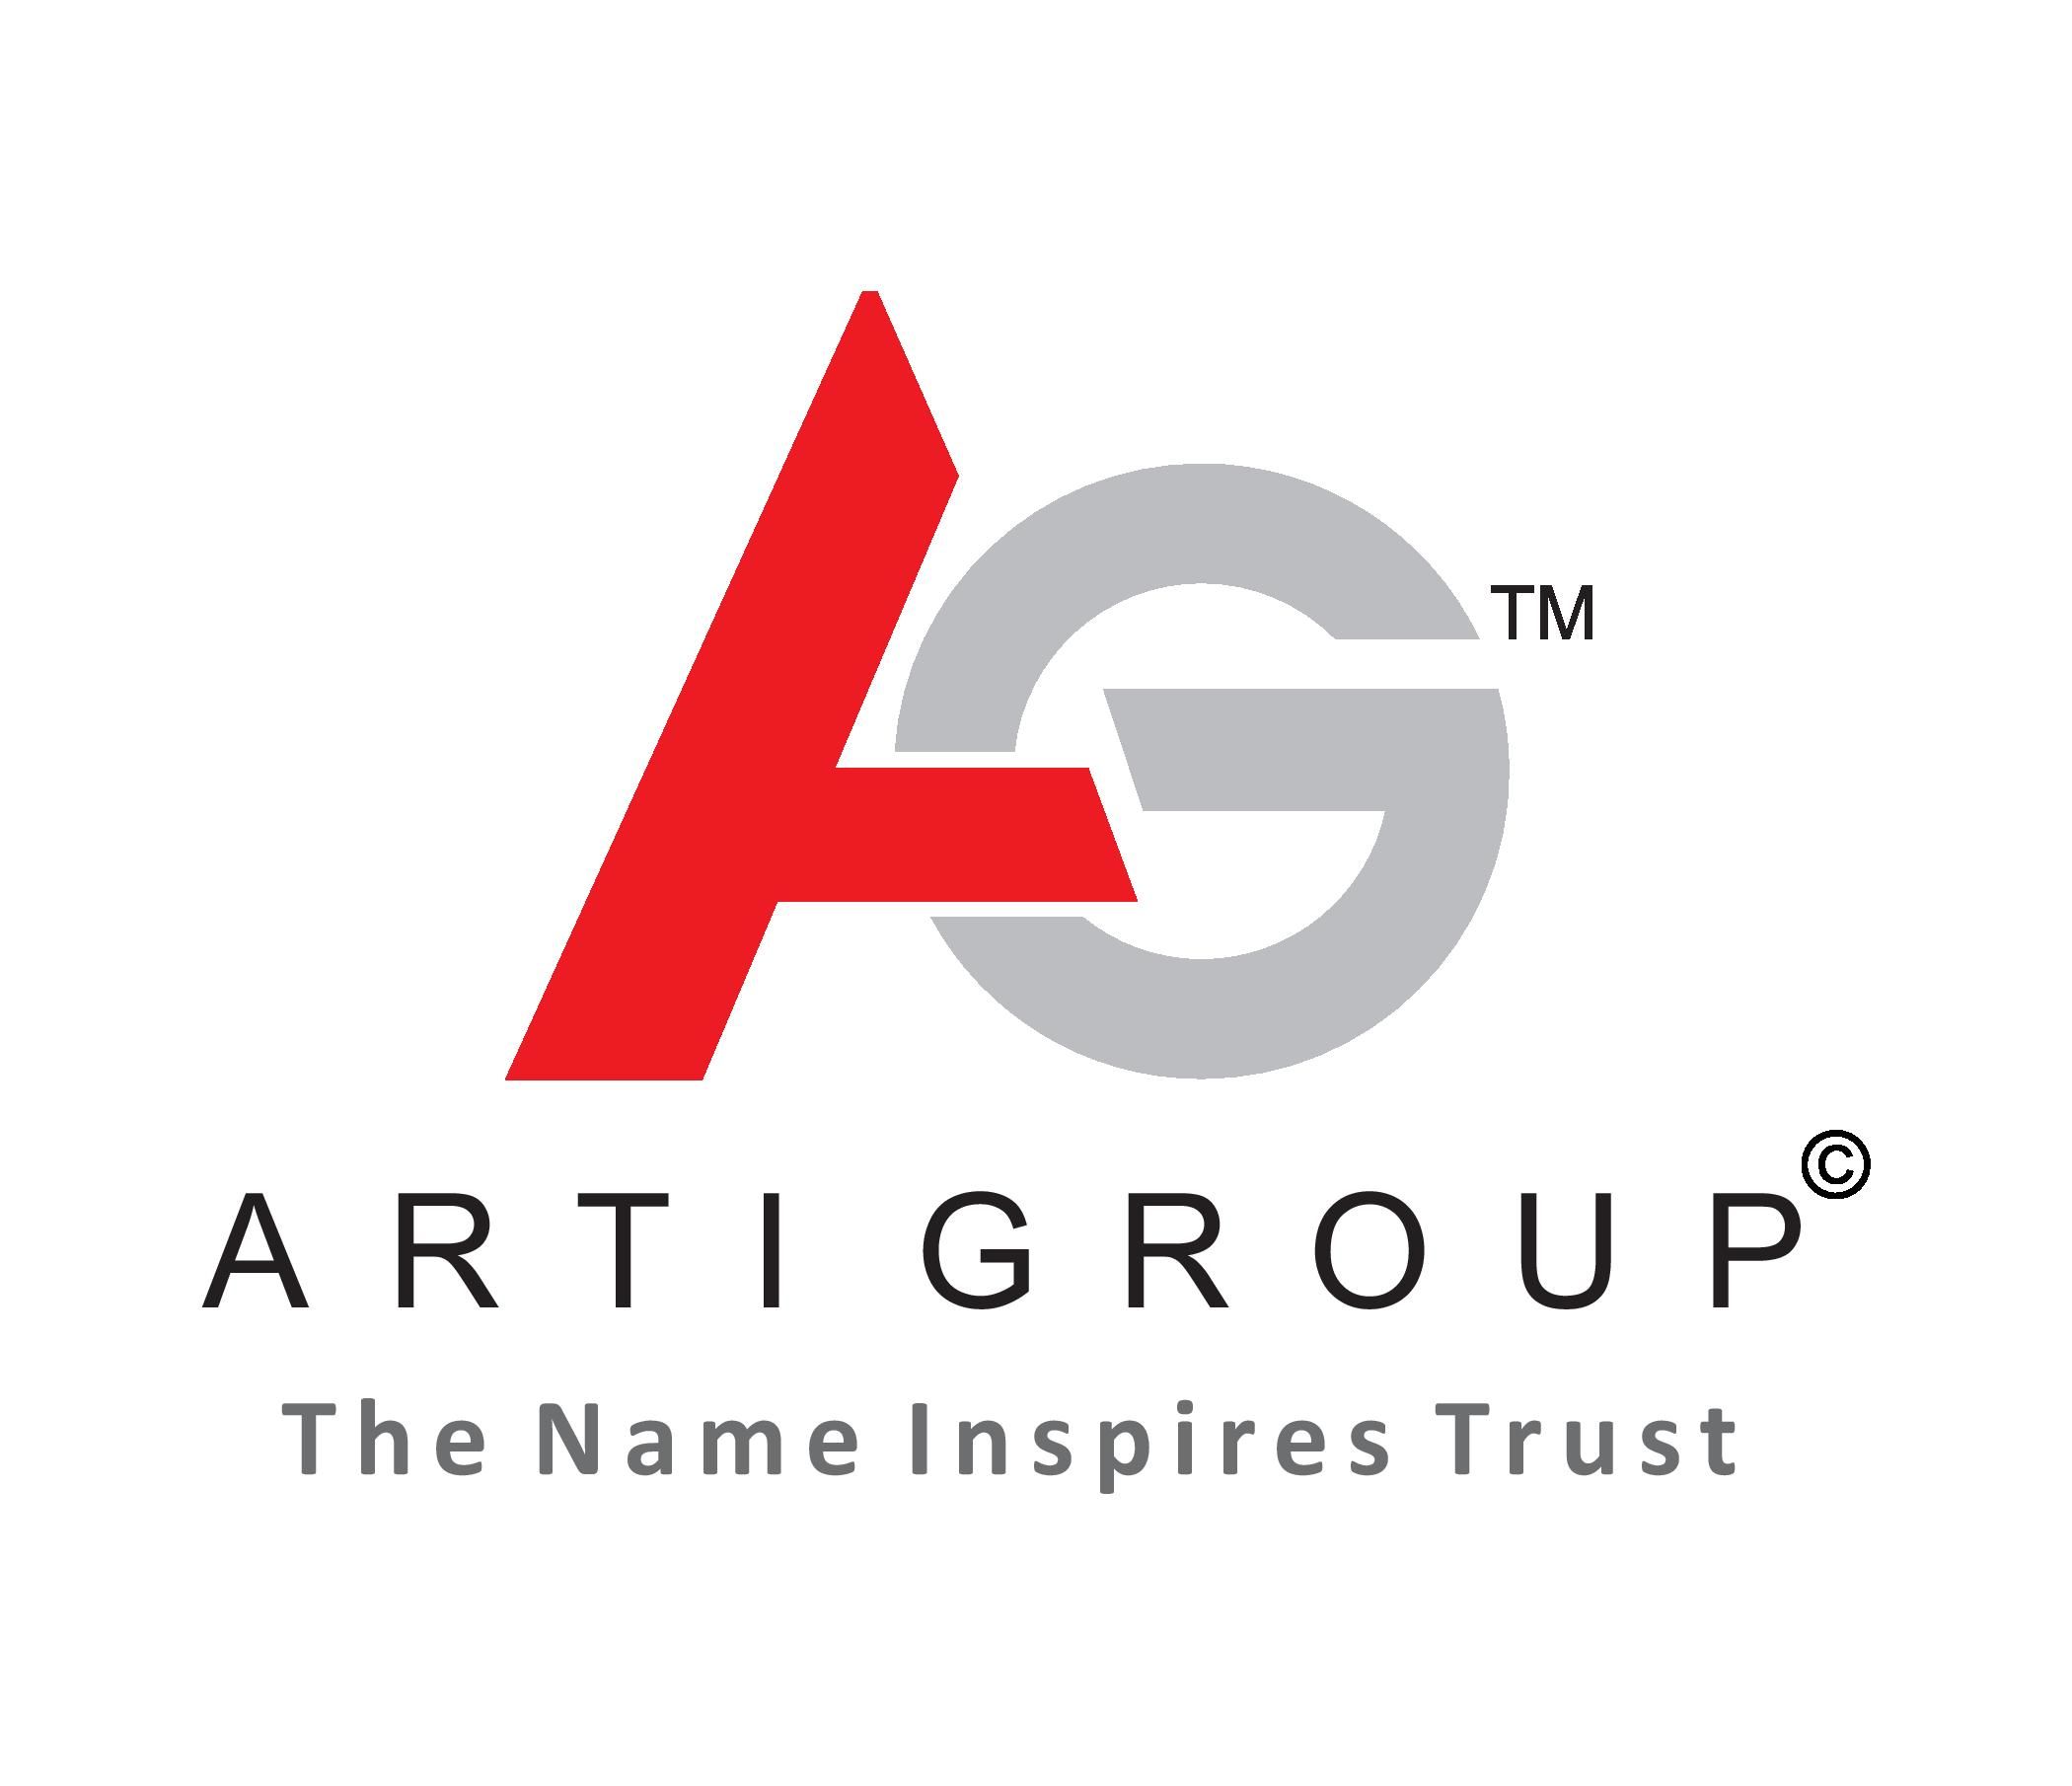 Arti Group